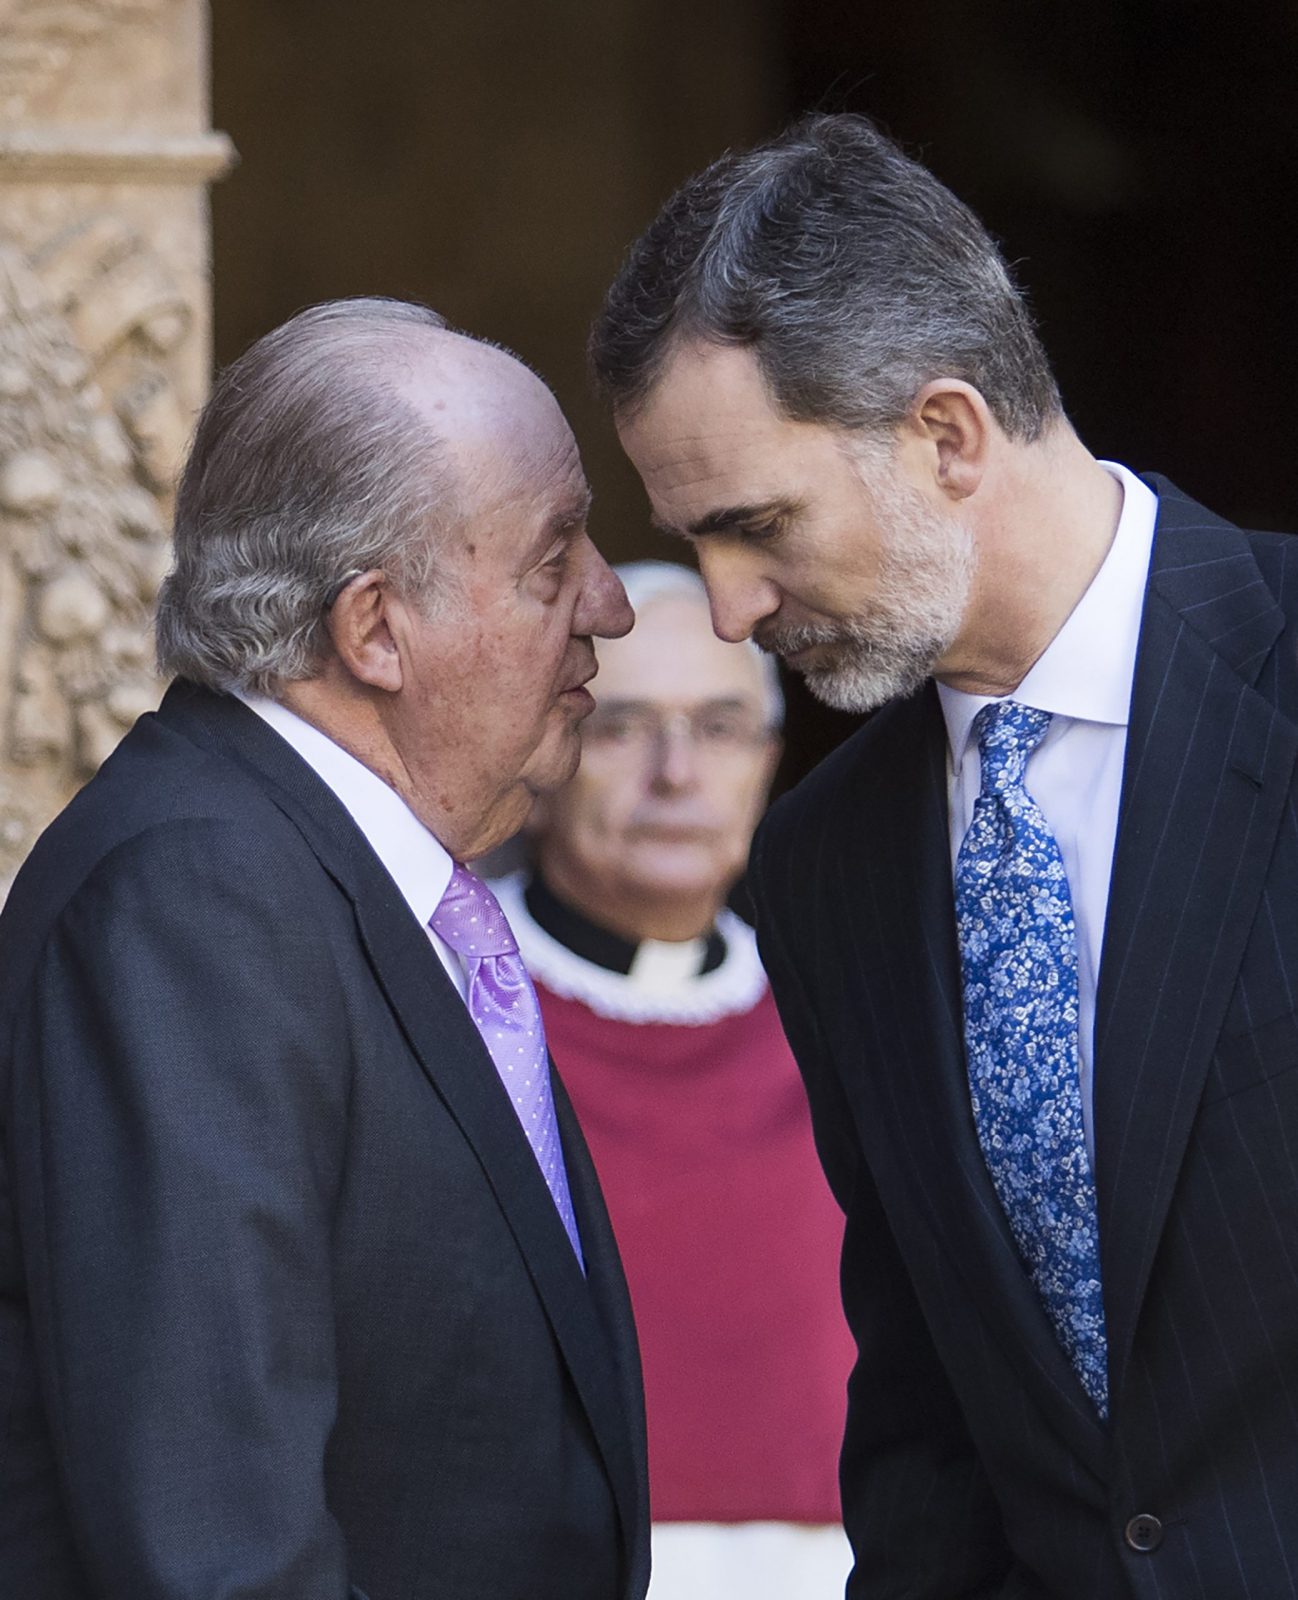 El rey emérito Juan Carlos I se va de España ante peso de escándalo de corrupción